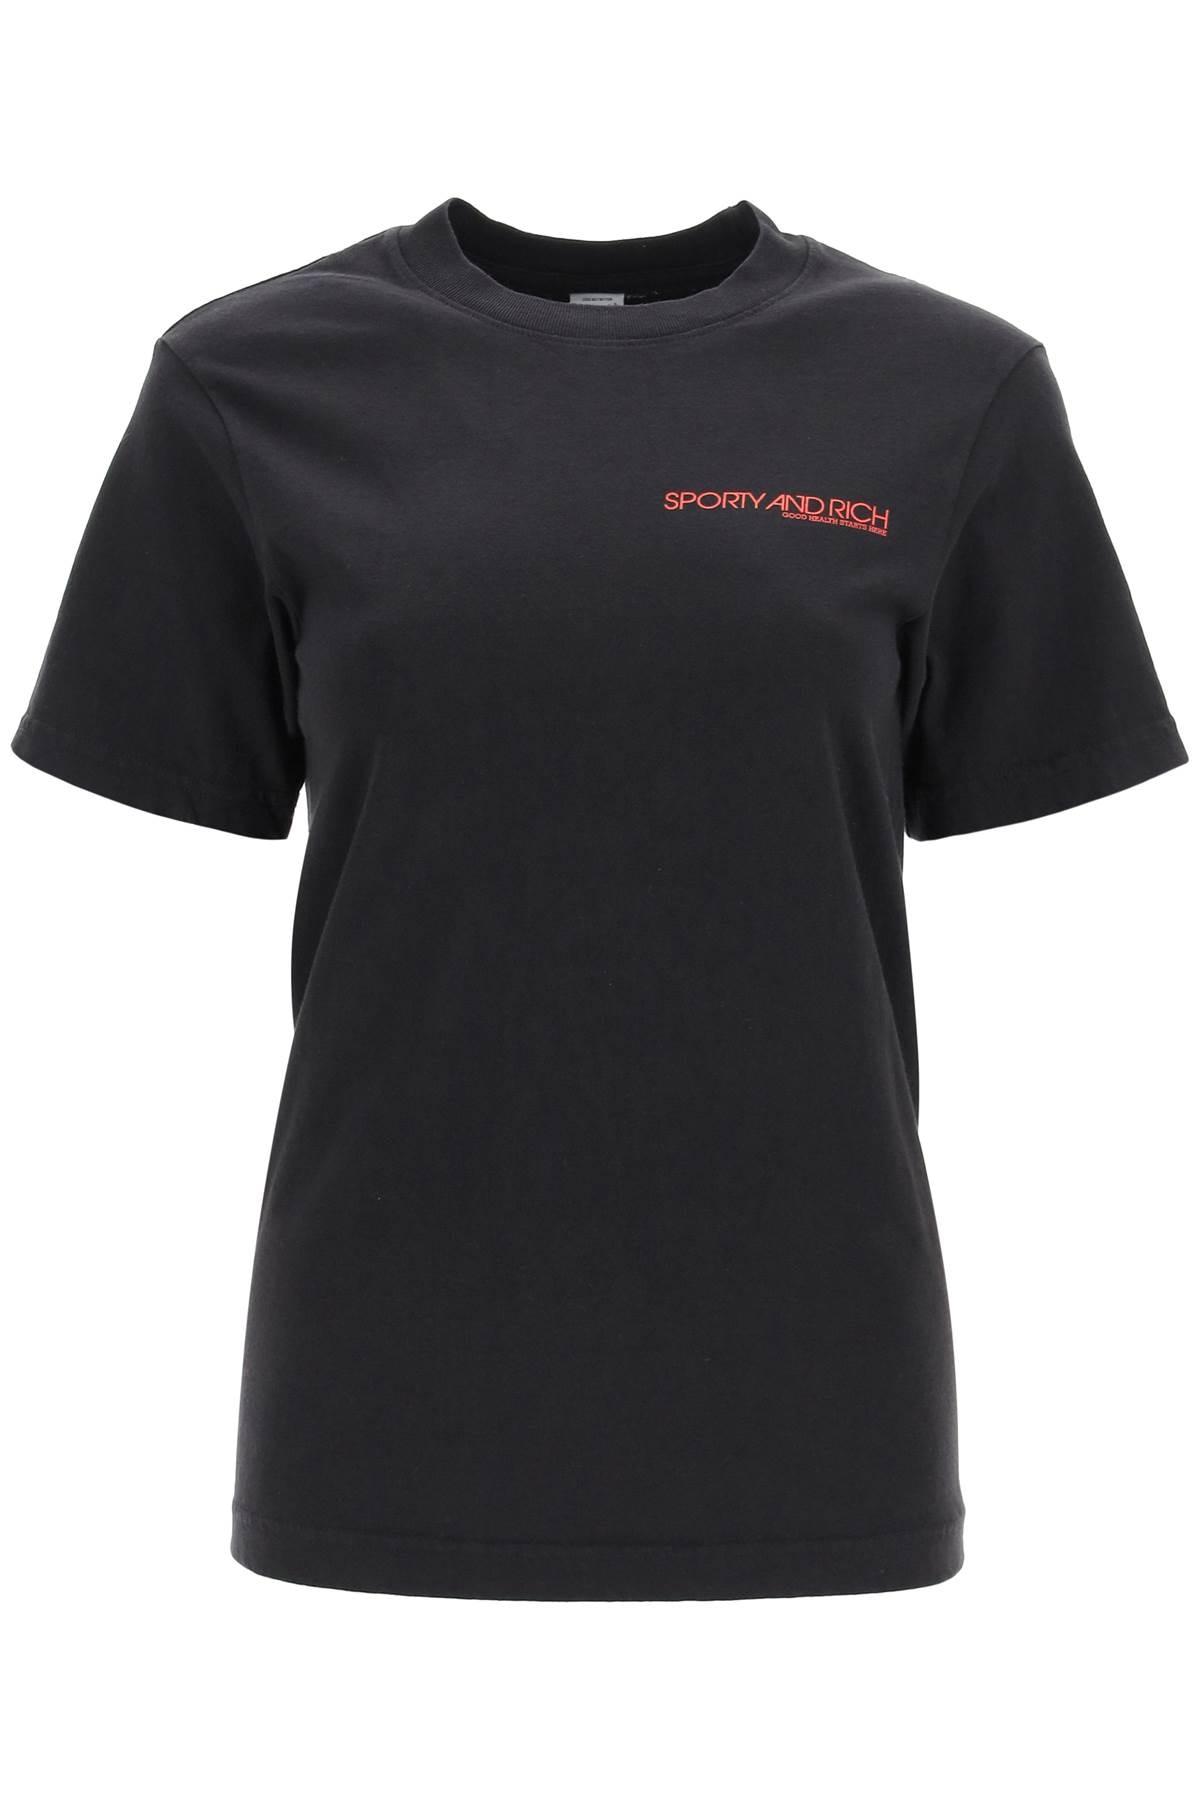 Sporty & Rich T-shirt disco in Schwarz Damen Bekleidung Oberteile T-Shirts 